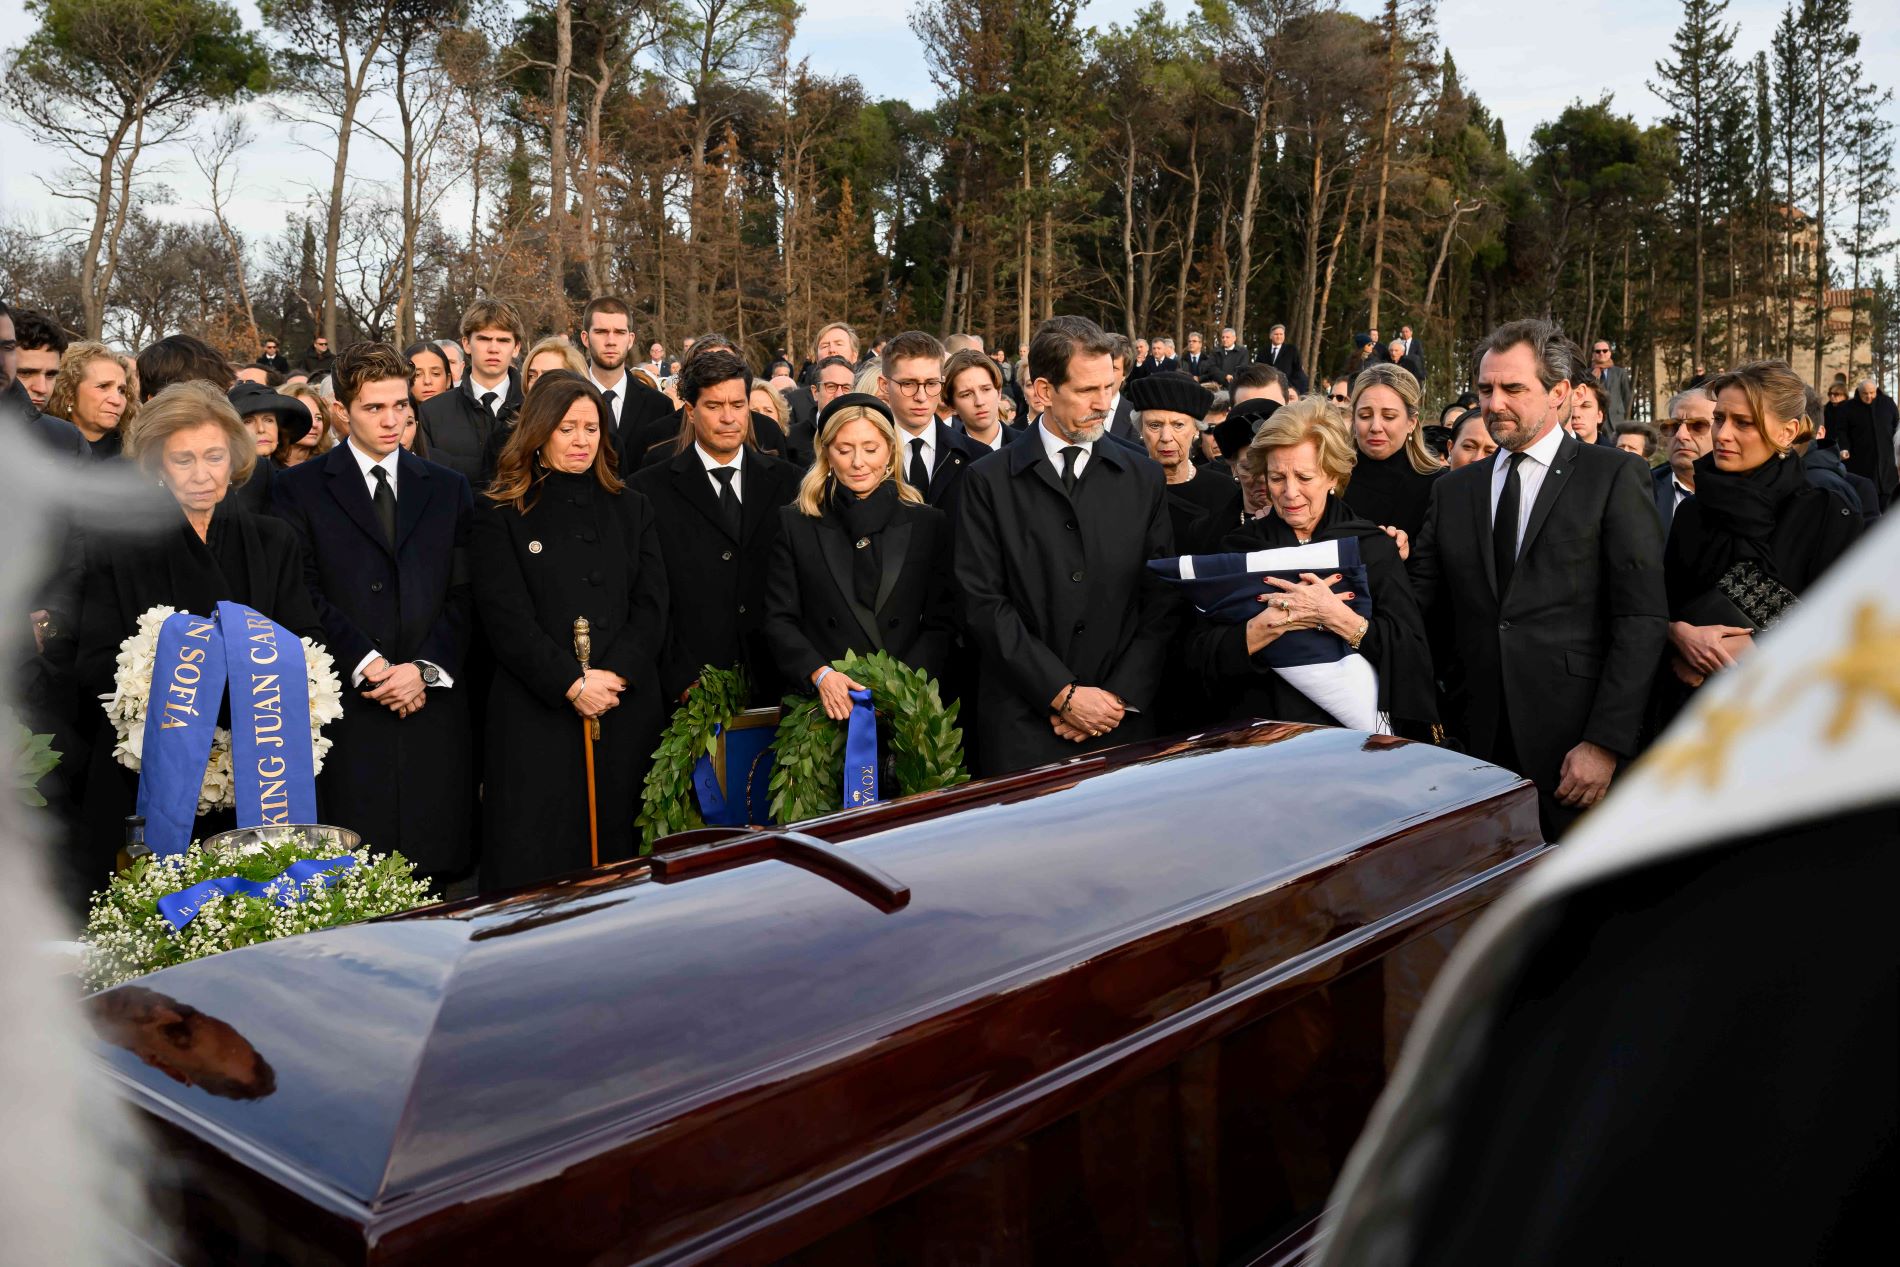 Η τέως βασιλική οικογένεια στην κηδεία του Κωνσταντίνου ©Eurokinissi